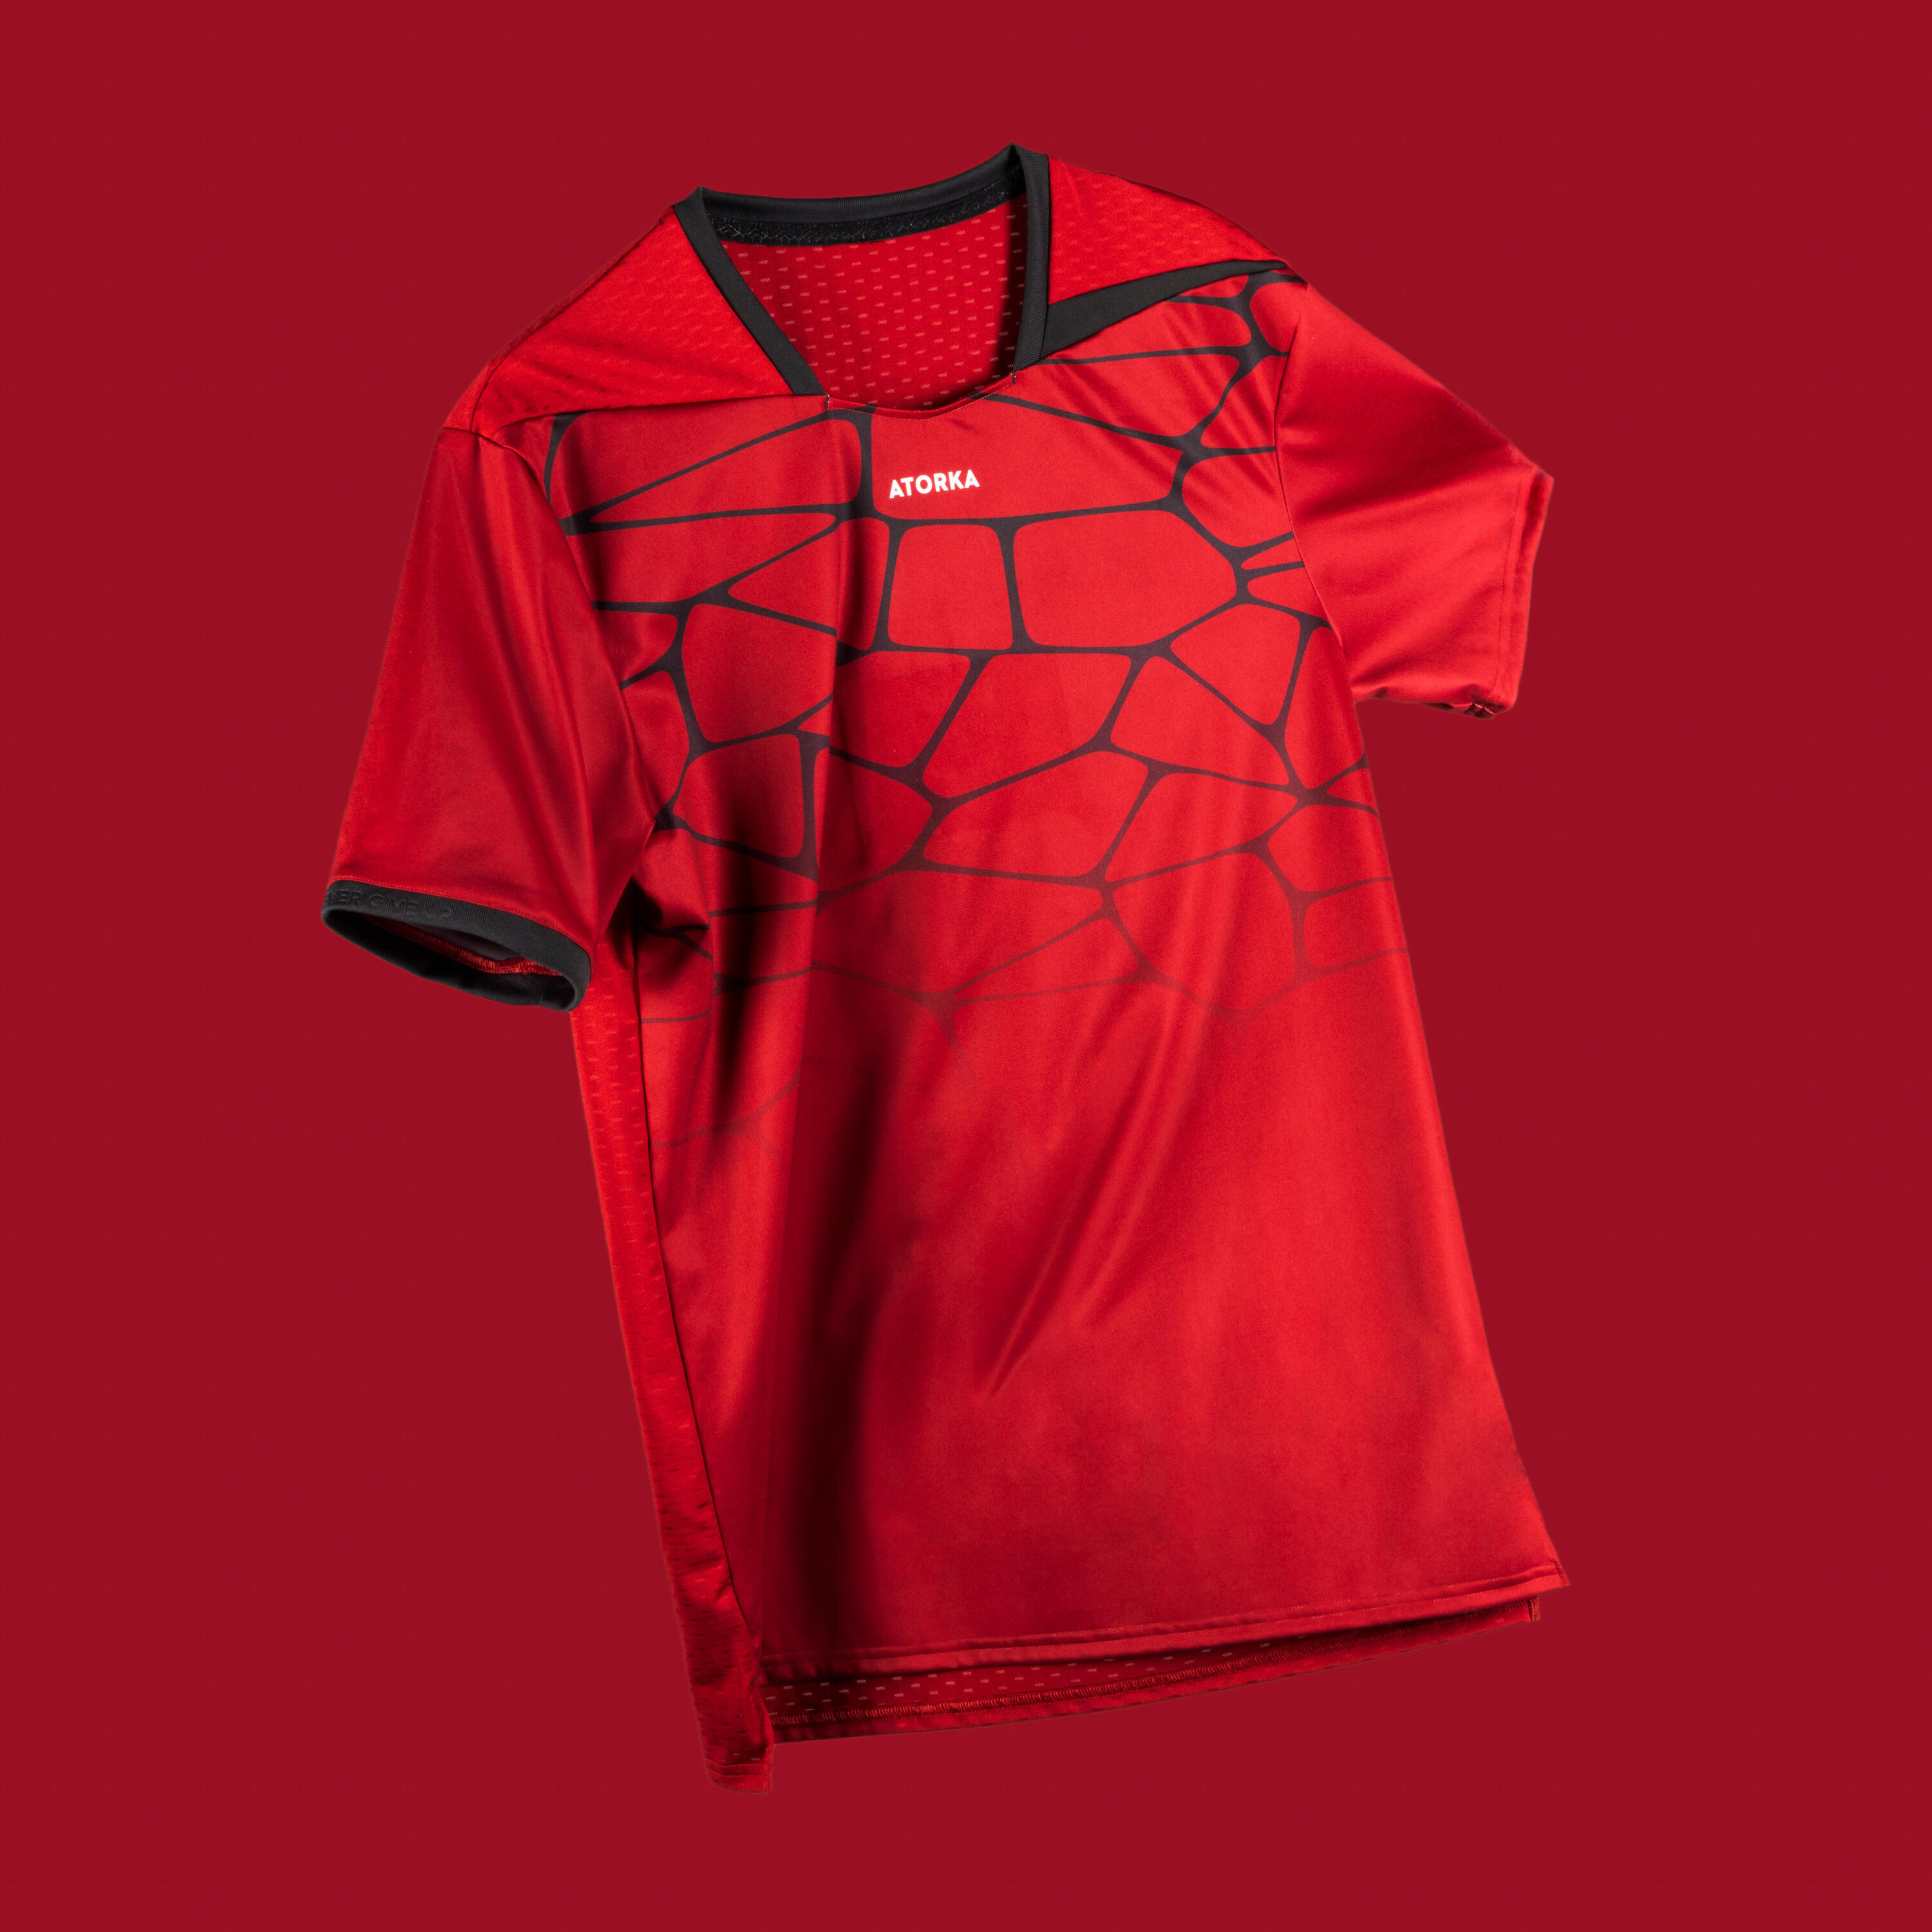 Men's Short-Sleeved Handball Jersey H500 - Red/Black 12/12